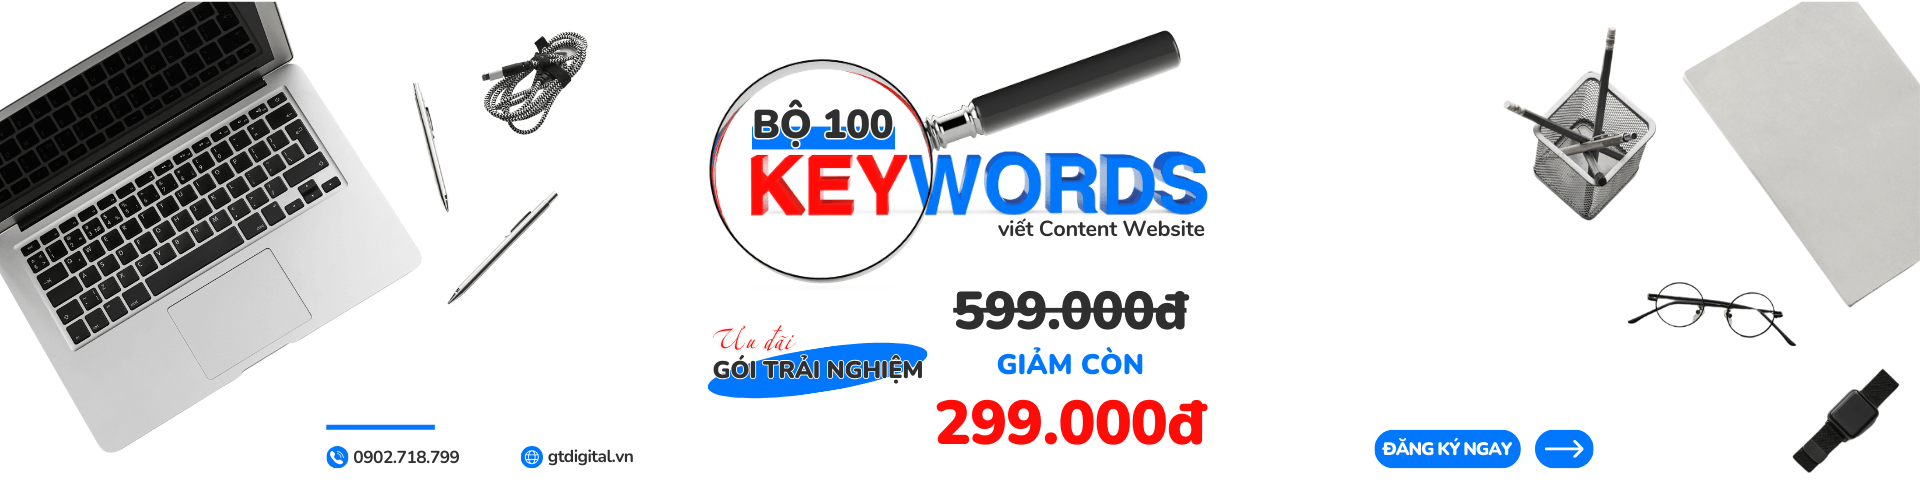 Bộ 100 từ khóa viết Content Website giá ưu đãi chỉ 299k